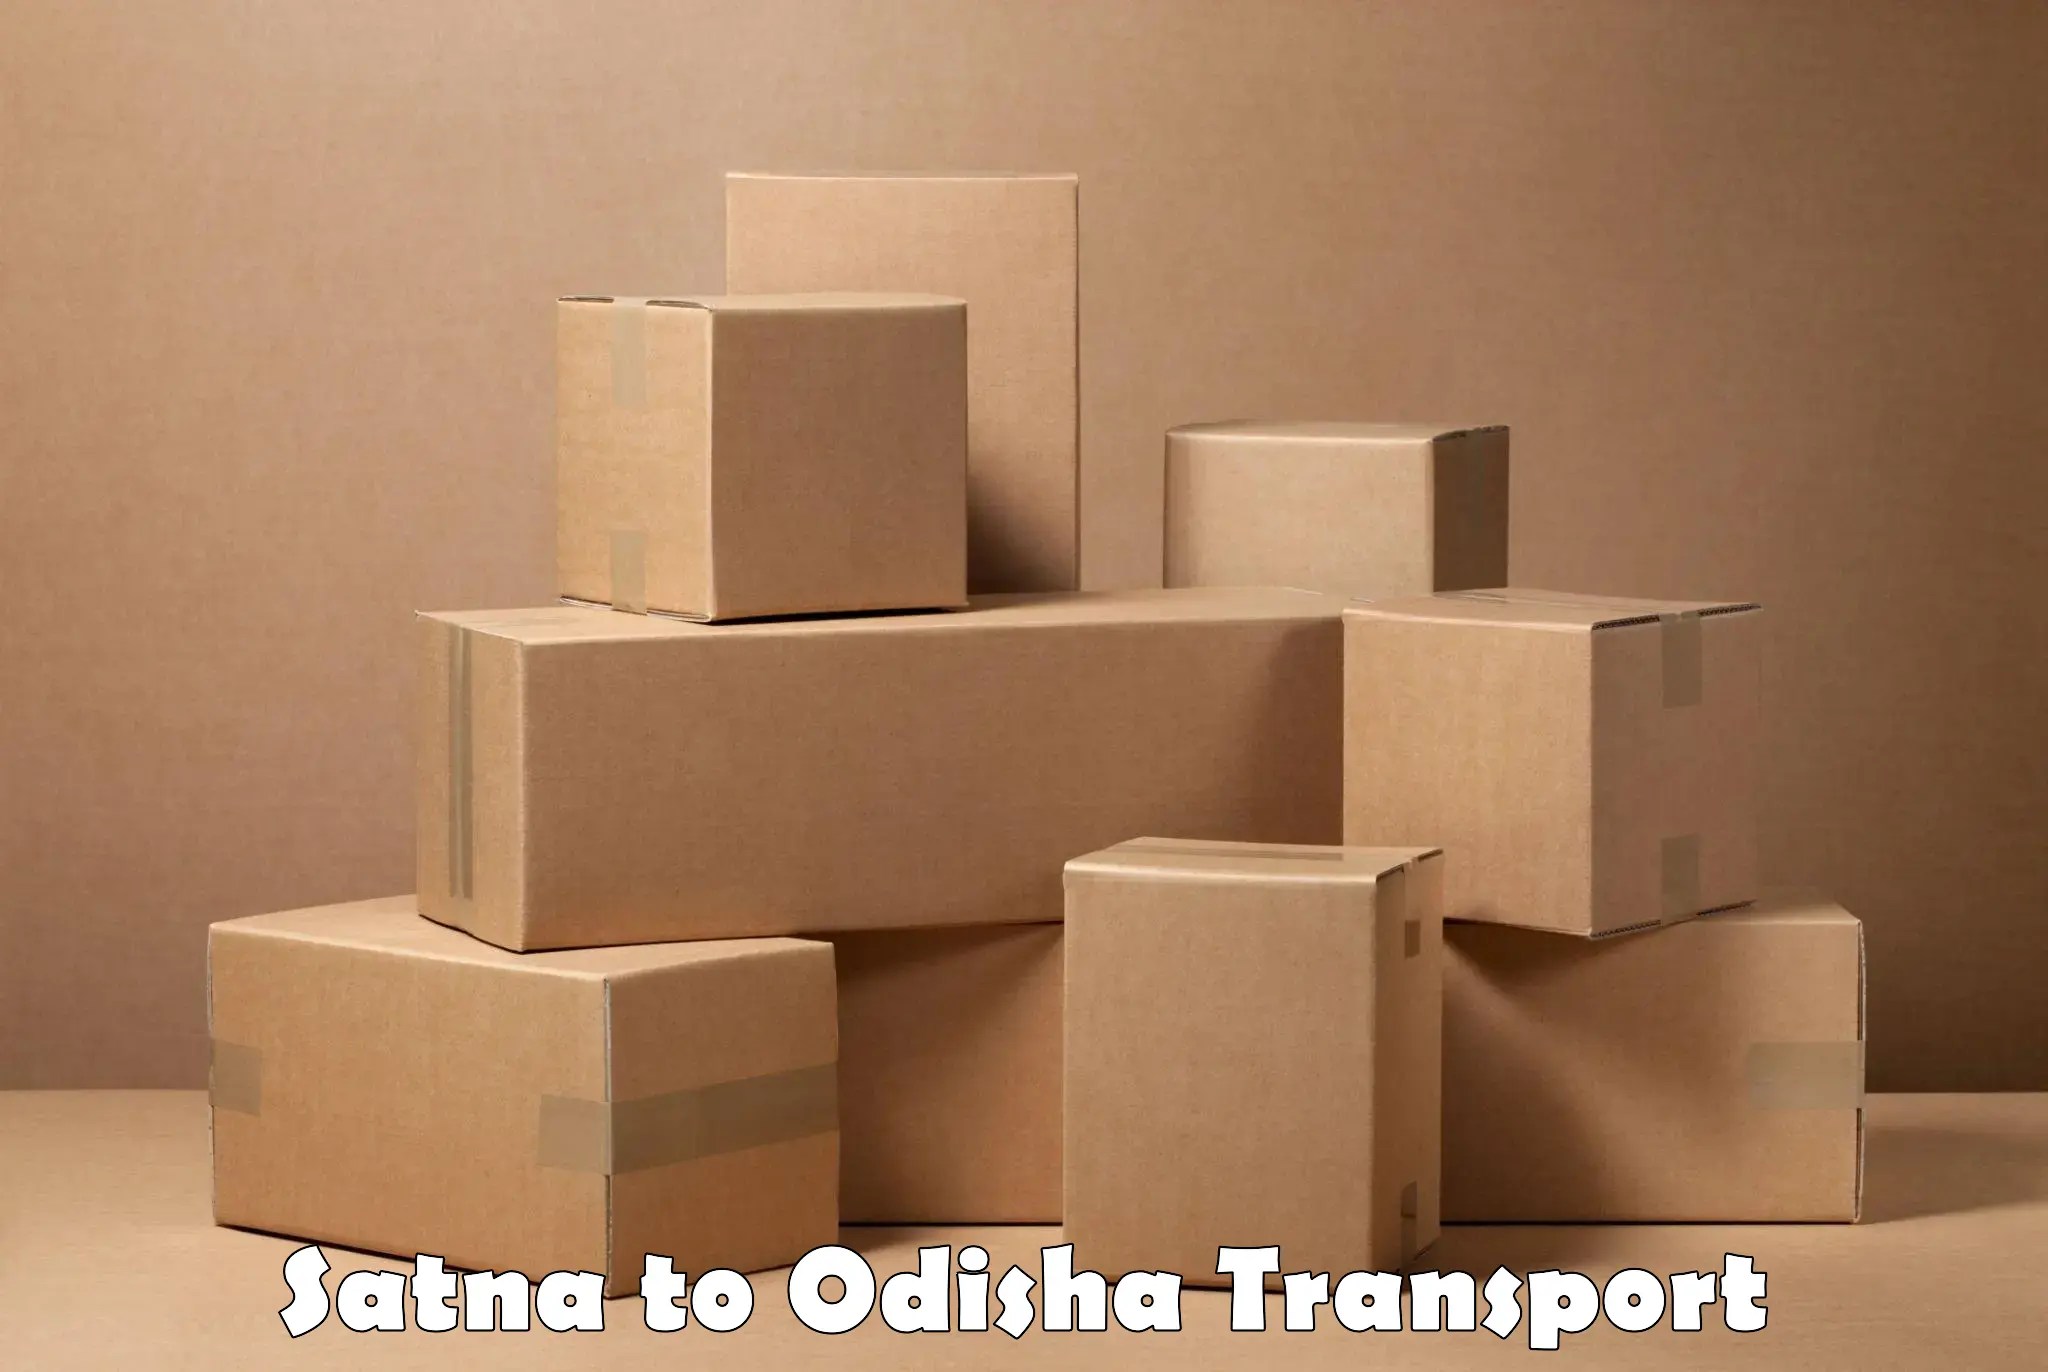 Furniture transport service Satna to Kalahandi